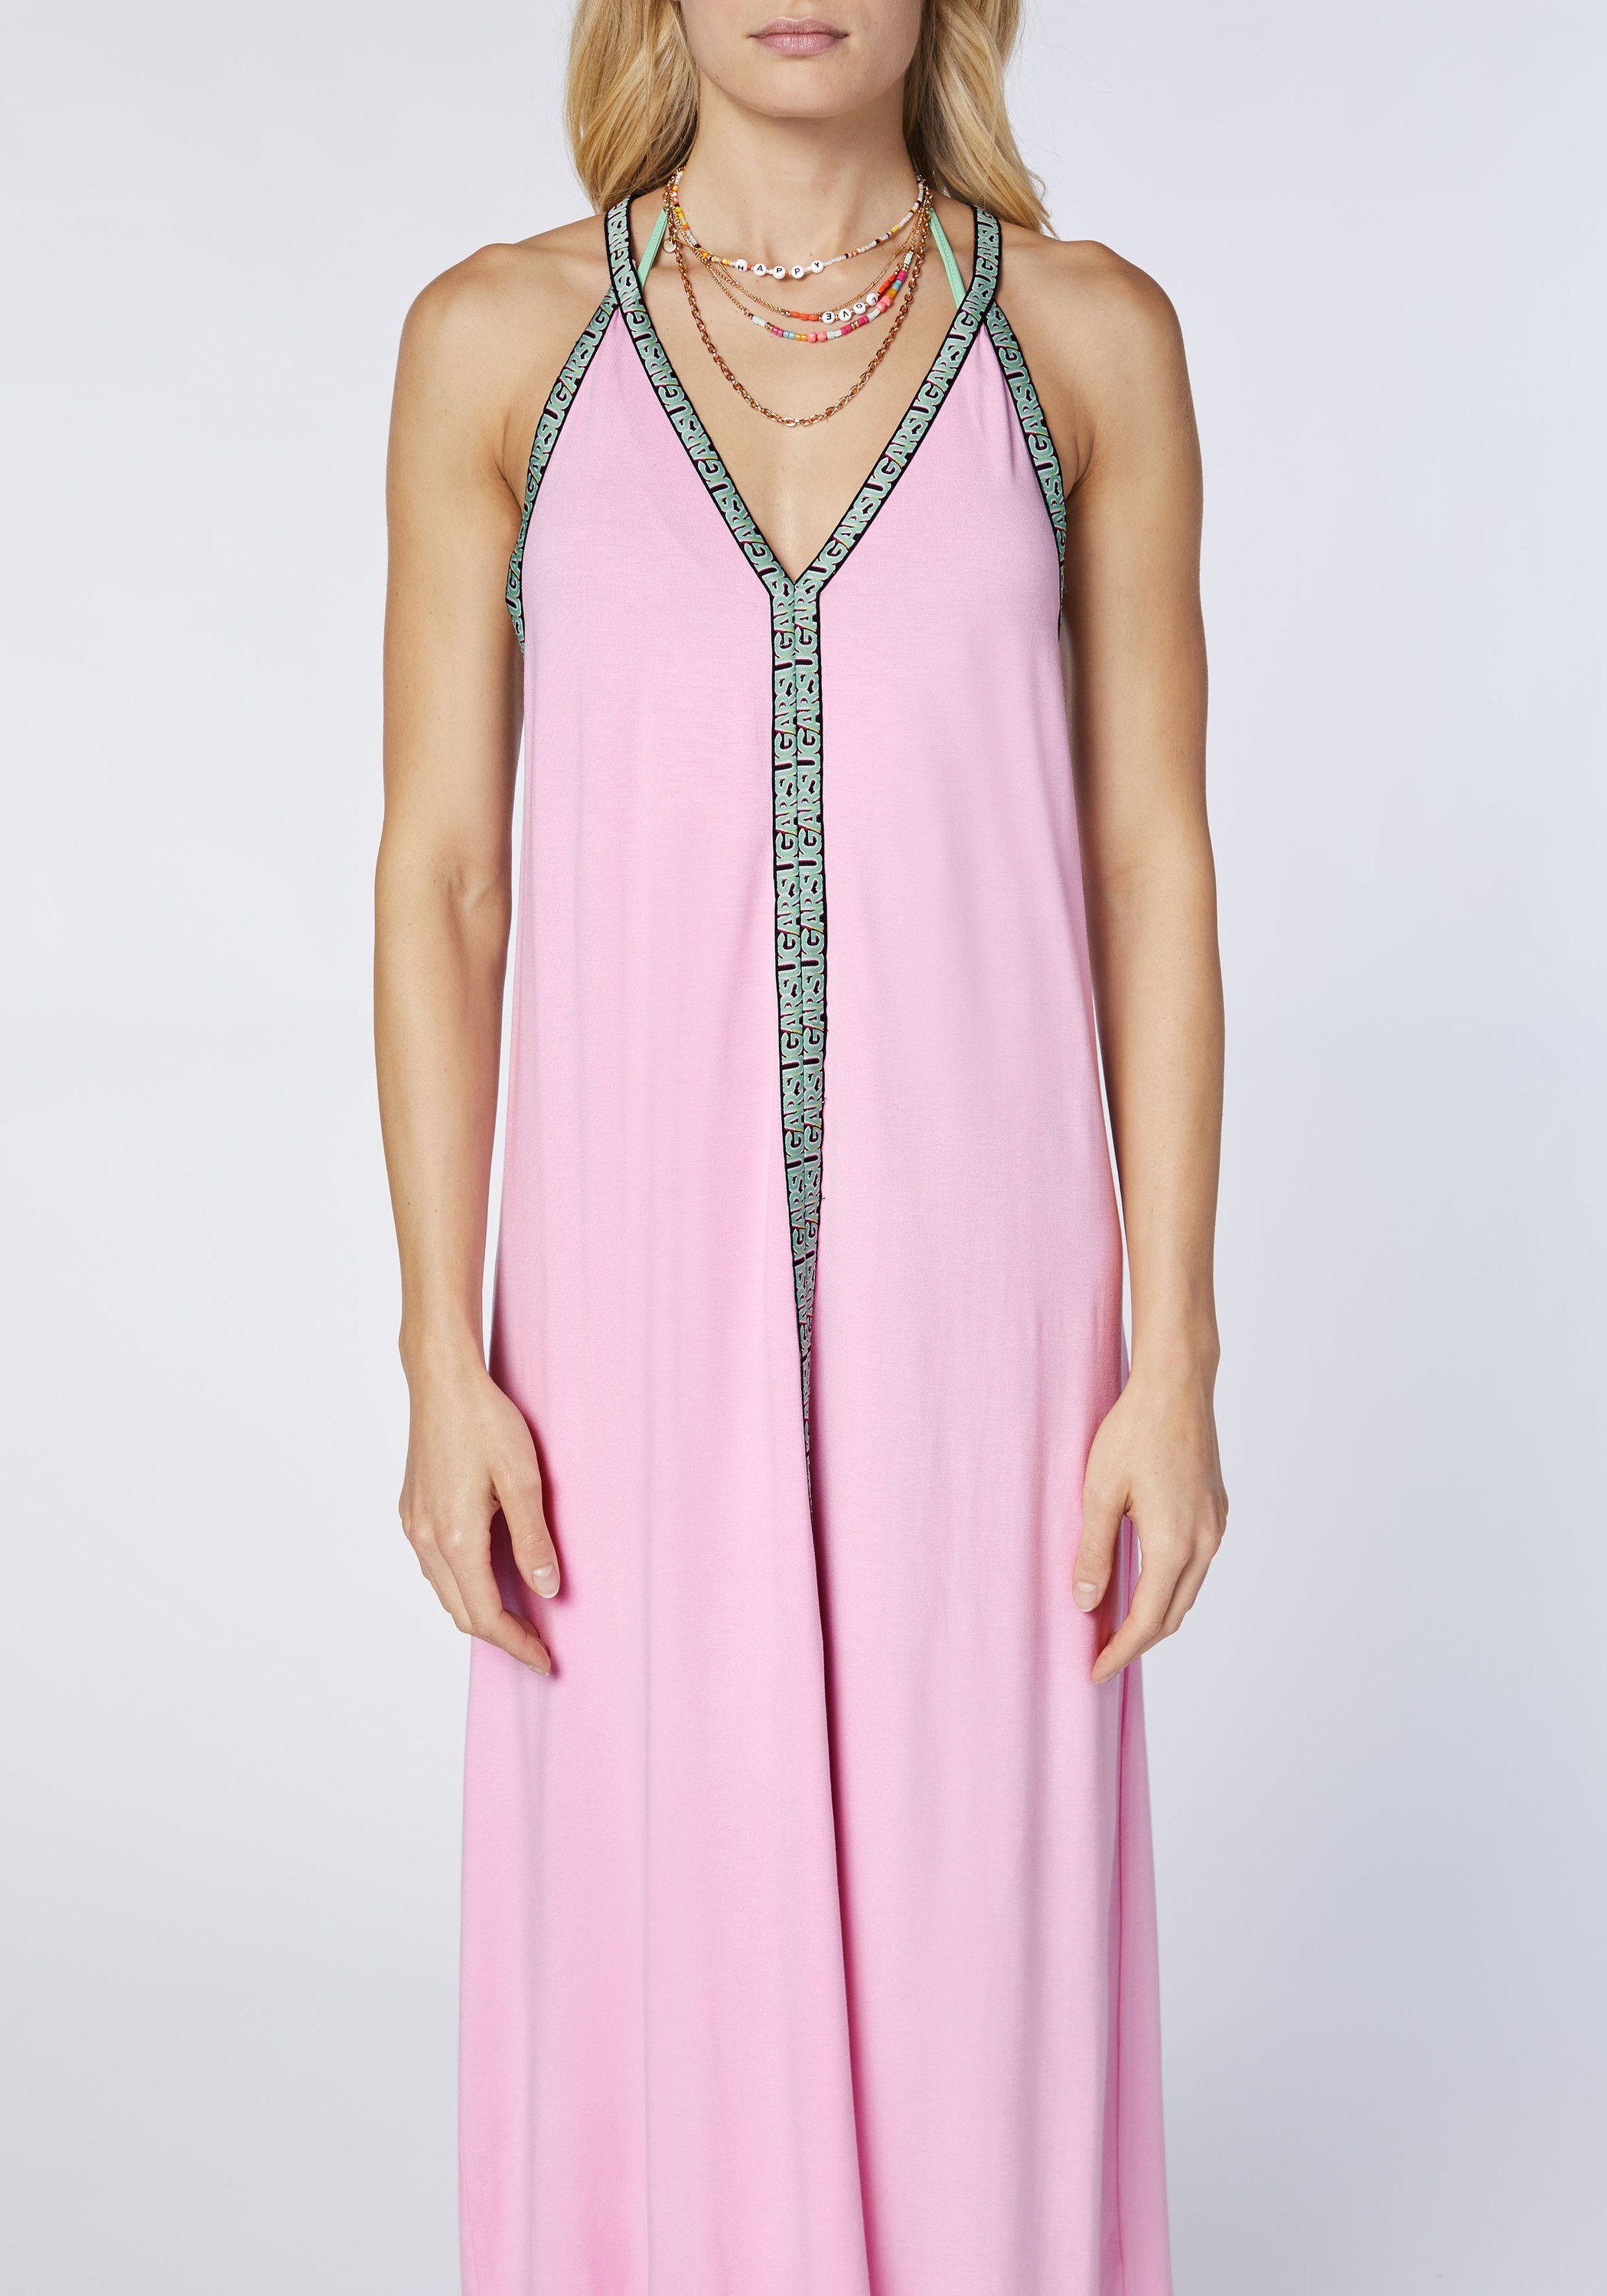 Kleid Chiemsee Prism Pink Langes Maxikleid